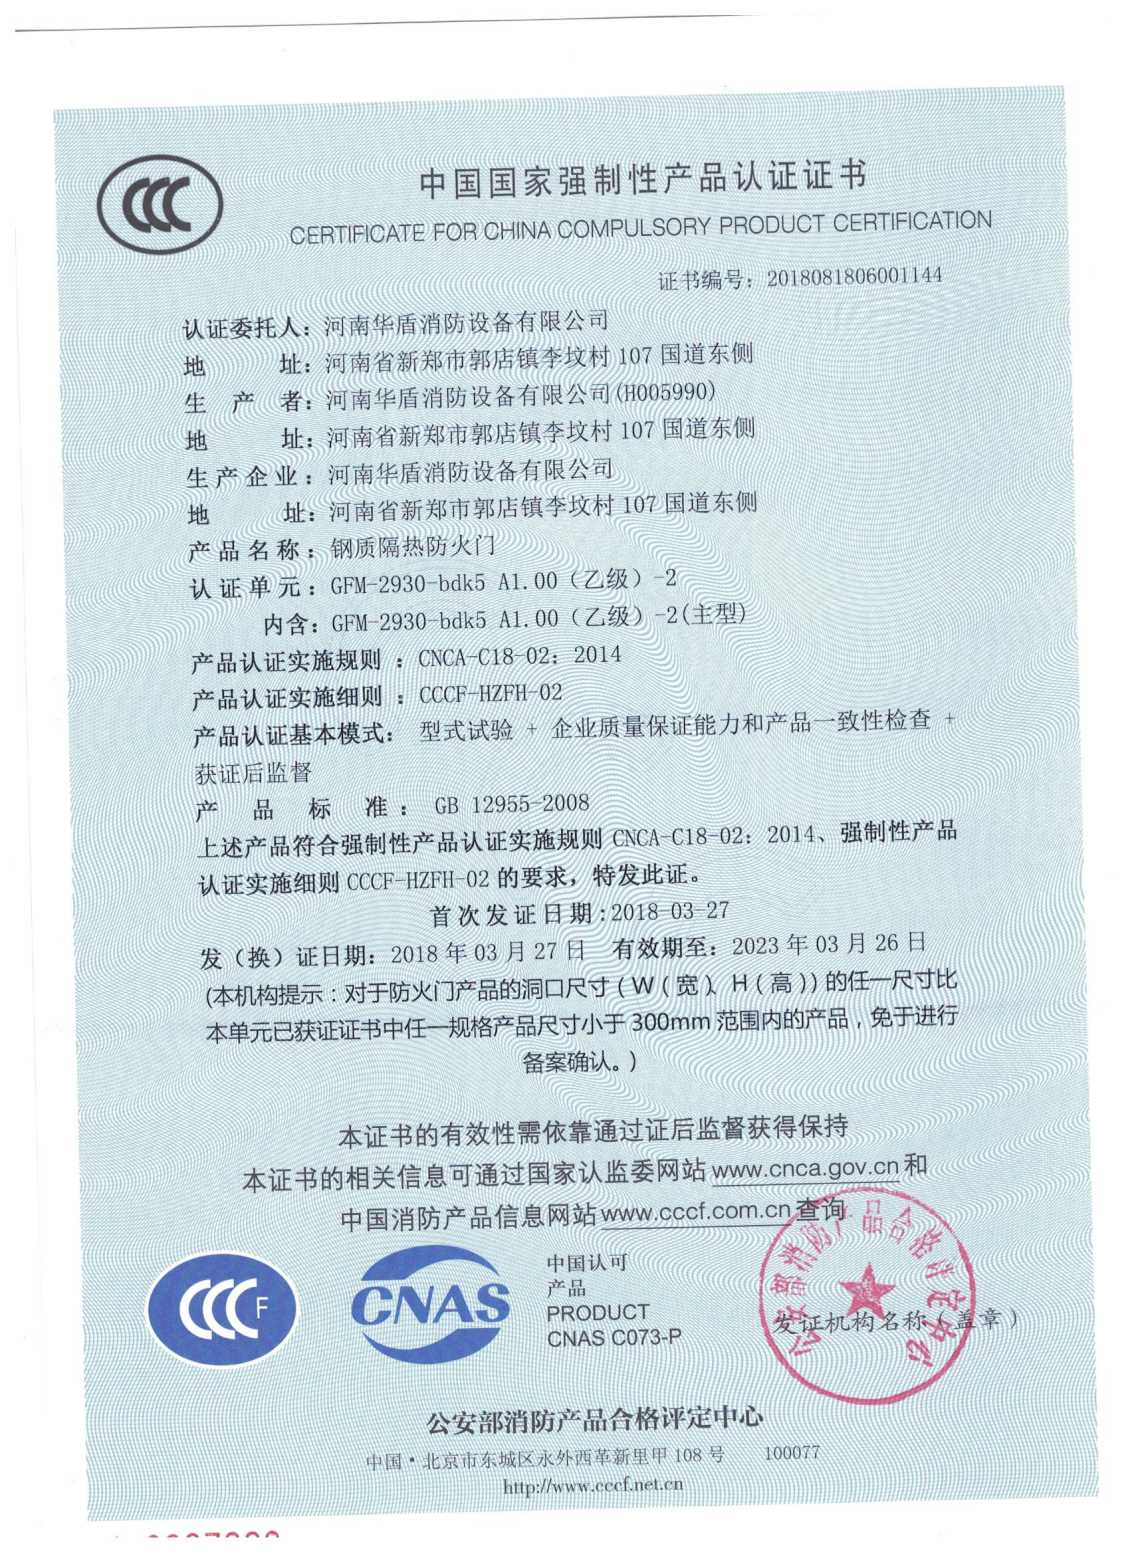 南阳超大防火门-3C证书/检验报告